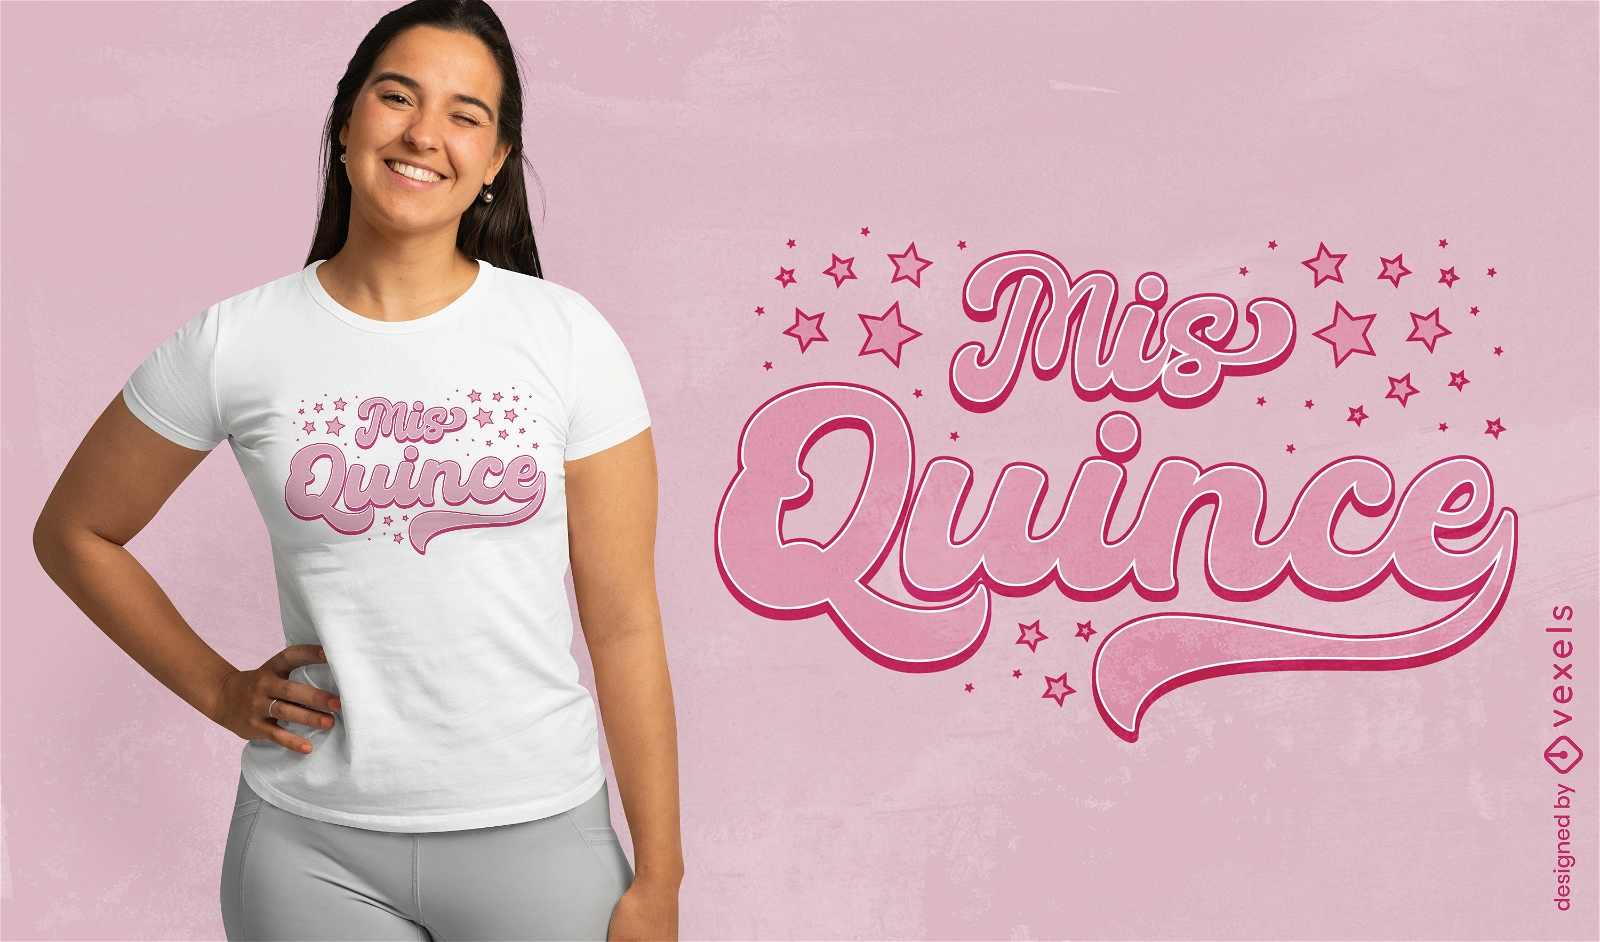 Diseño de camiseta quicneañera con letras rosas.